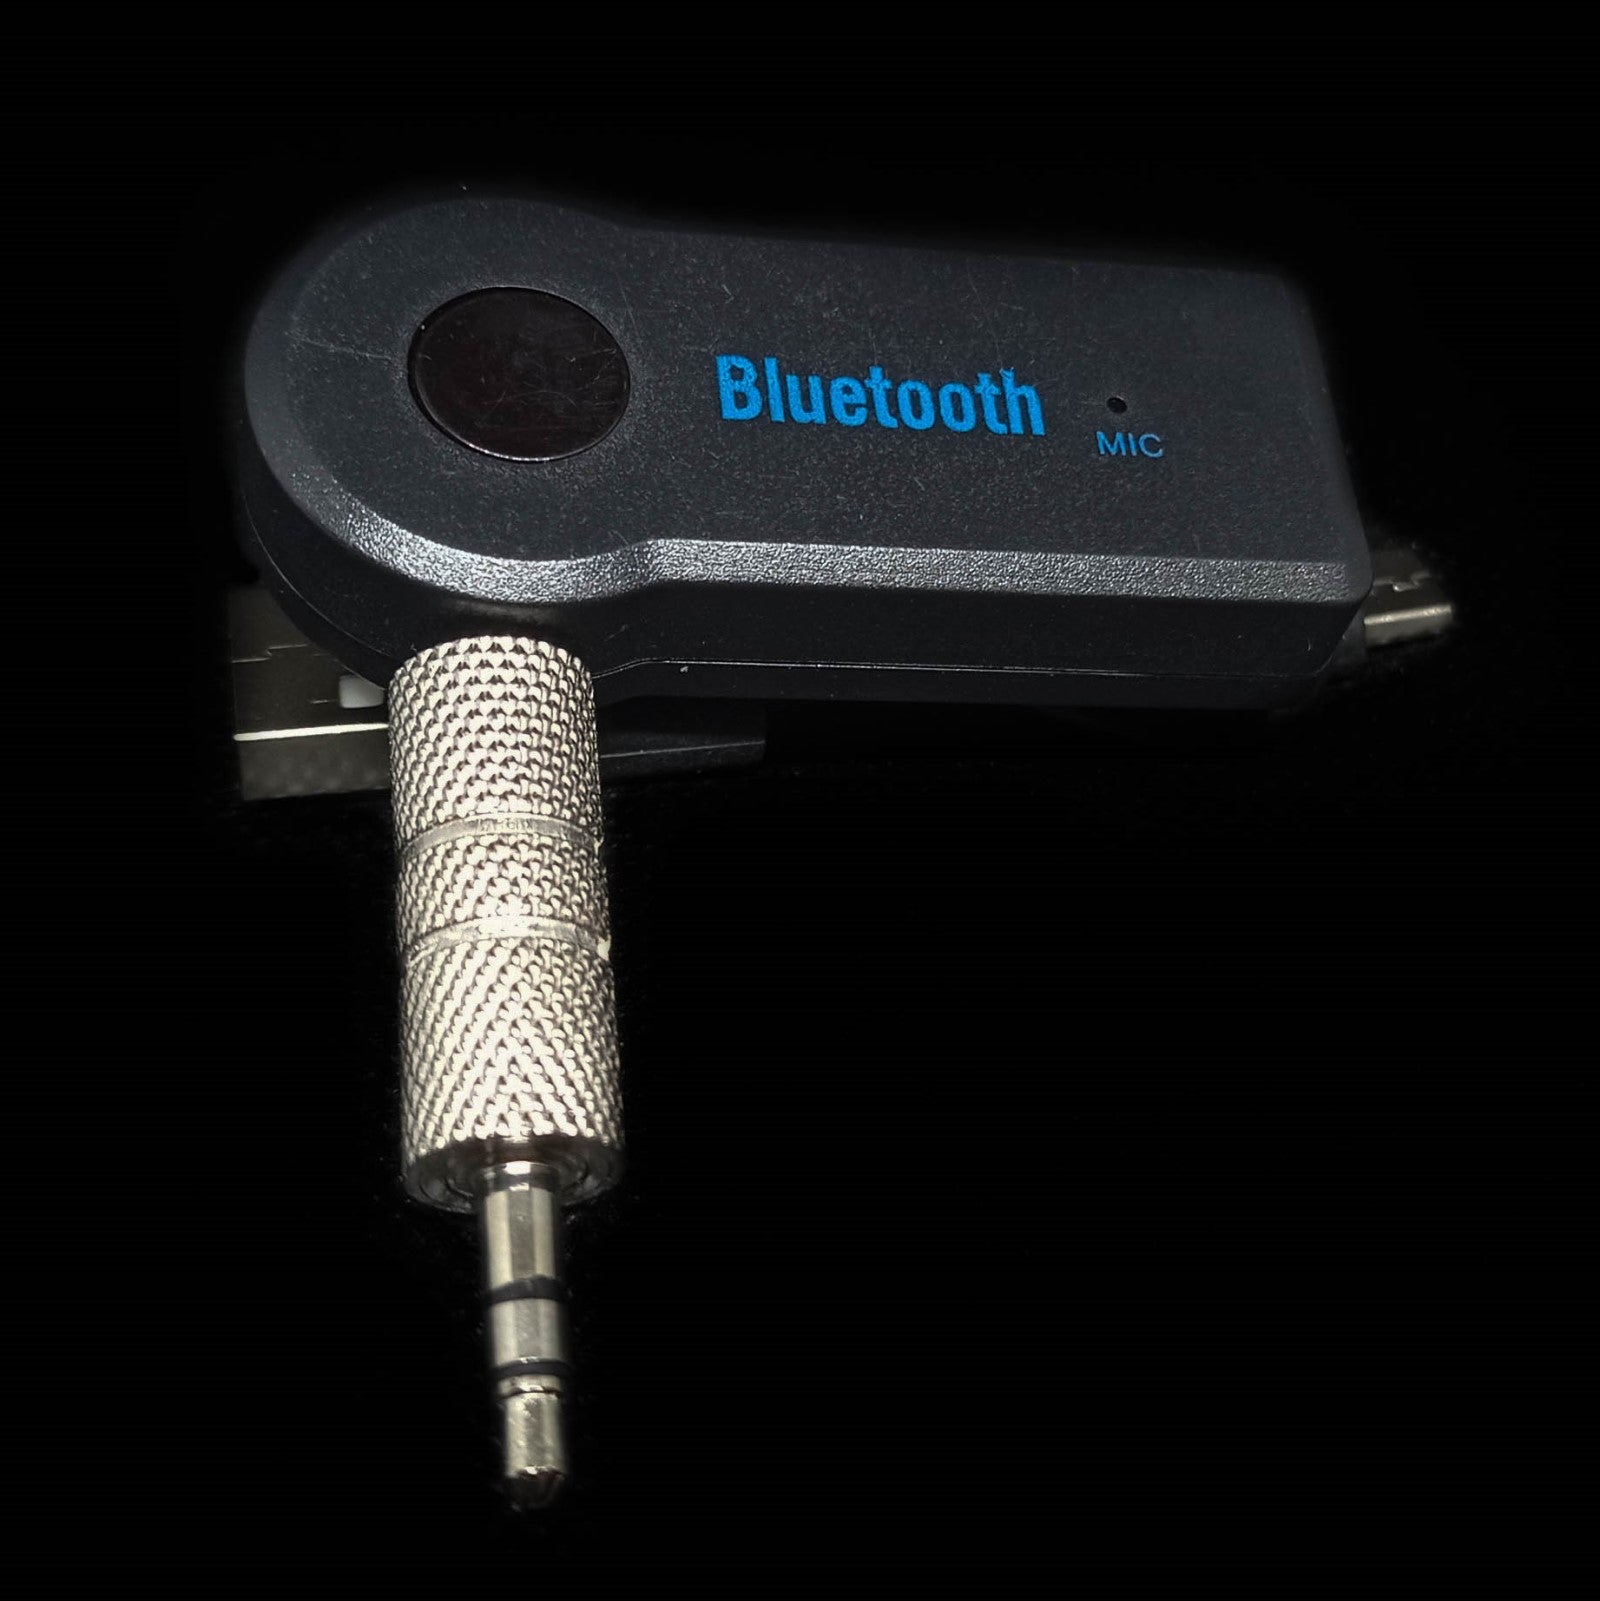 transmissor Bluetooth aux detalhe do produto com microfone, possibilidade de chamadas em alta voz e de ouvir música a partir do telemóvel